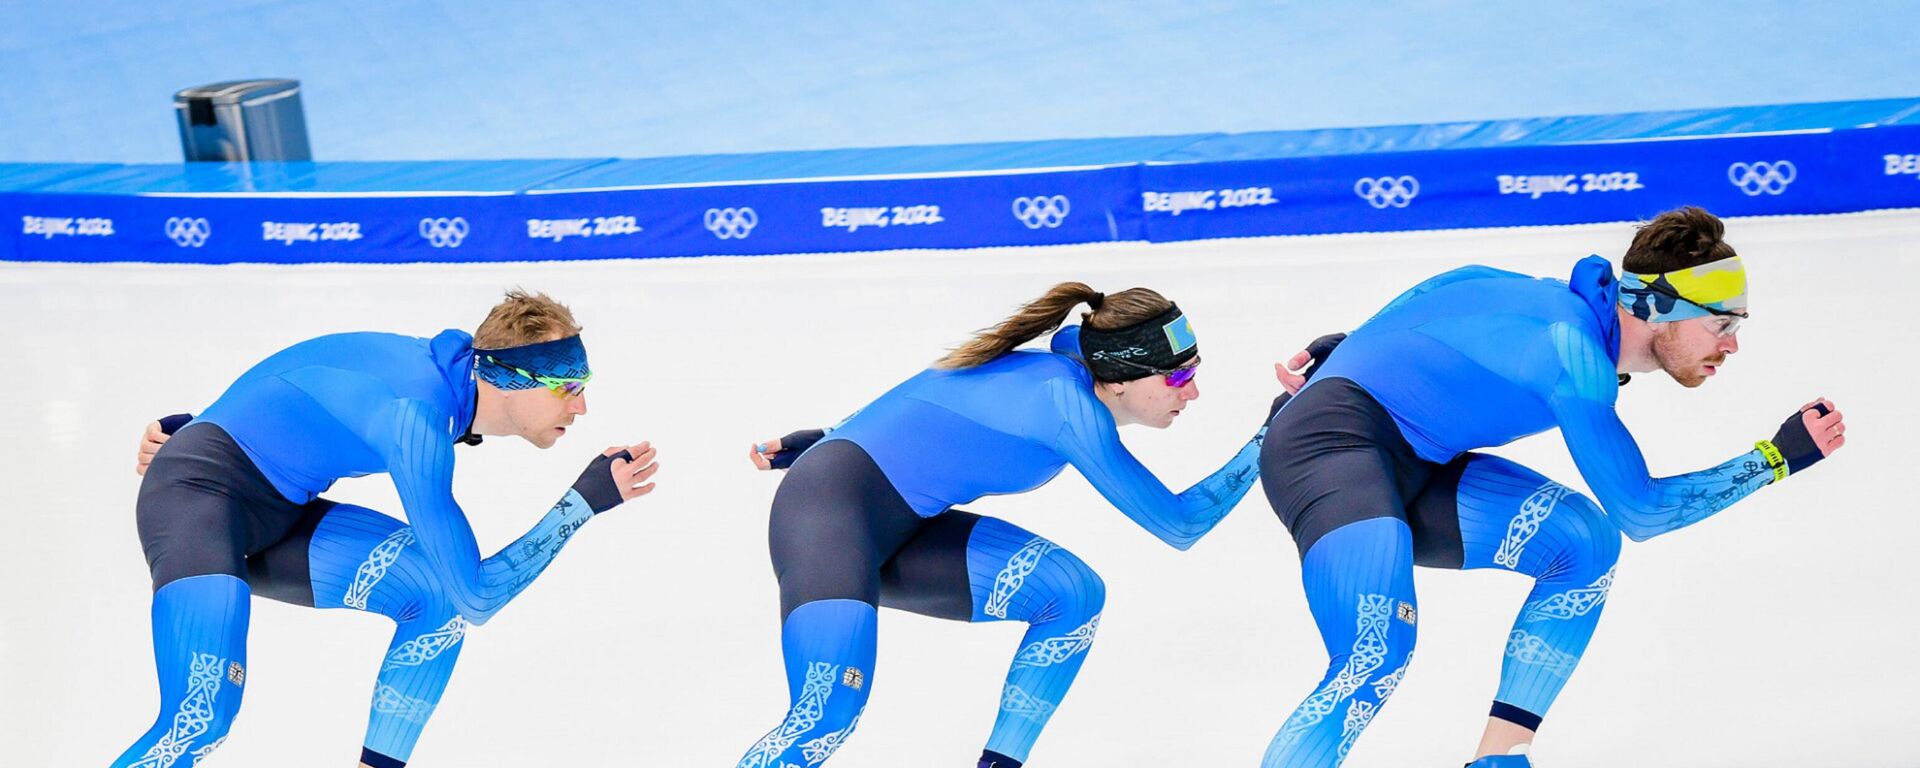 Казахстанские конькобежцы осваивают олимпийский лед в Пекине  - Sputnik Қазақстан, 1920, 05.02.2022